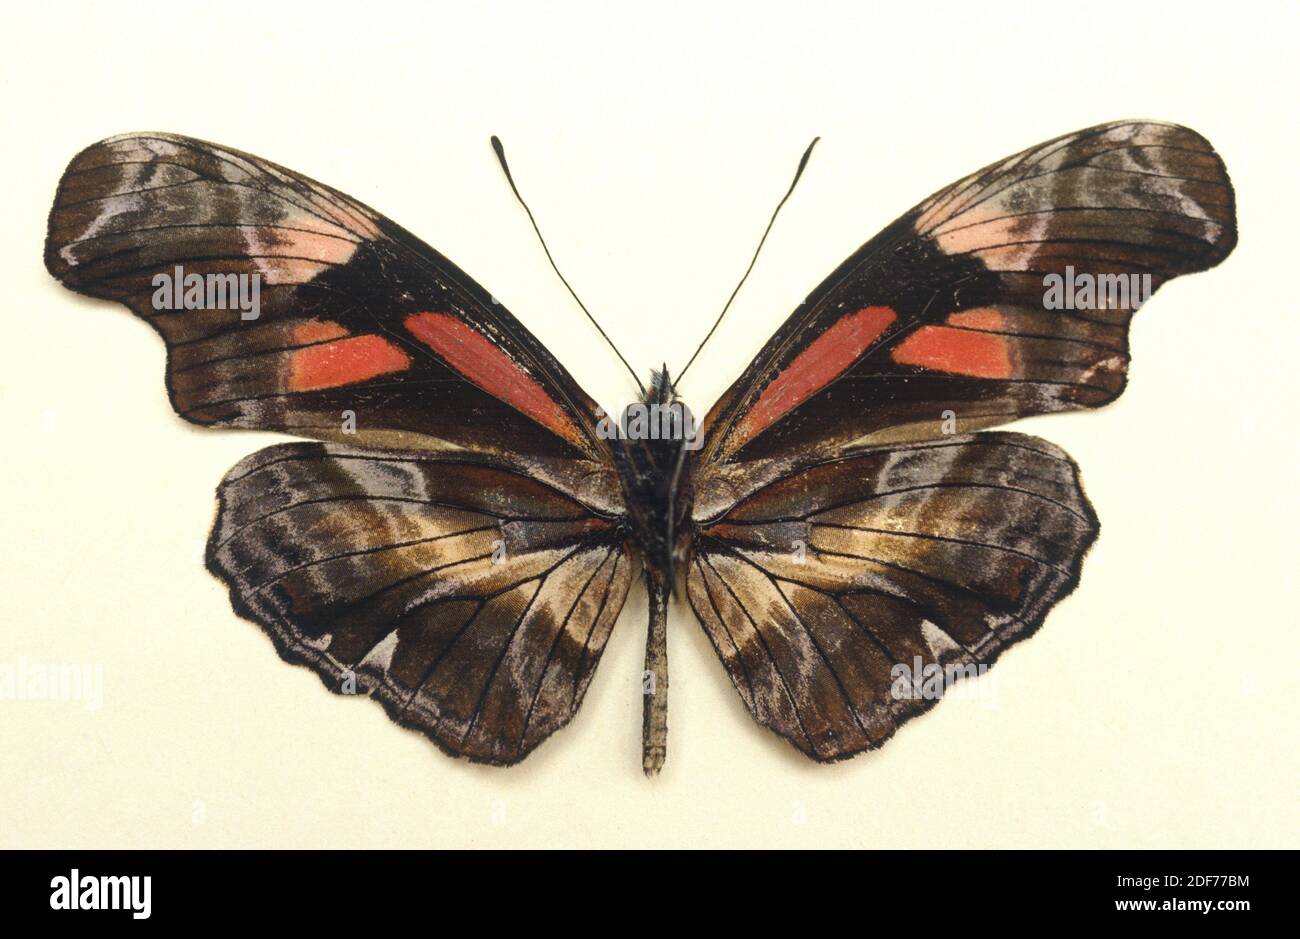 Il telesiphe ad ala angolare (Podotricha telesiphe) è una farfalla mimica originaria del Sud America nordoccidentale. Adulto, lato ventrale. Foto Stock